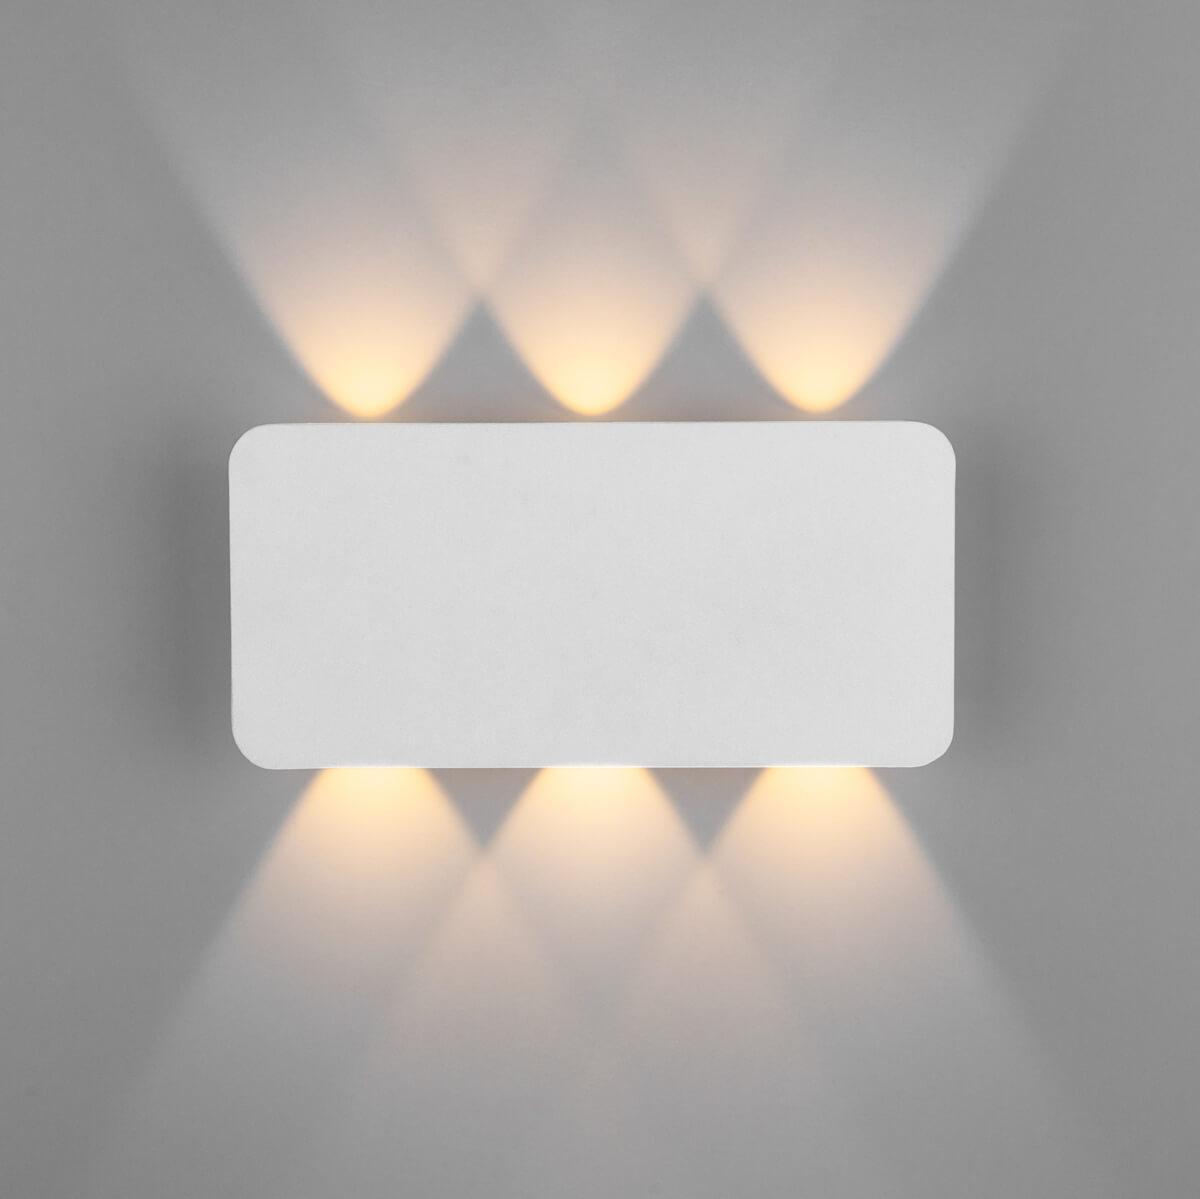 Настенный светодиодный светильник Elektrostandard 40138/1 LED белый бюст император николай ii белый